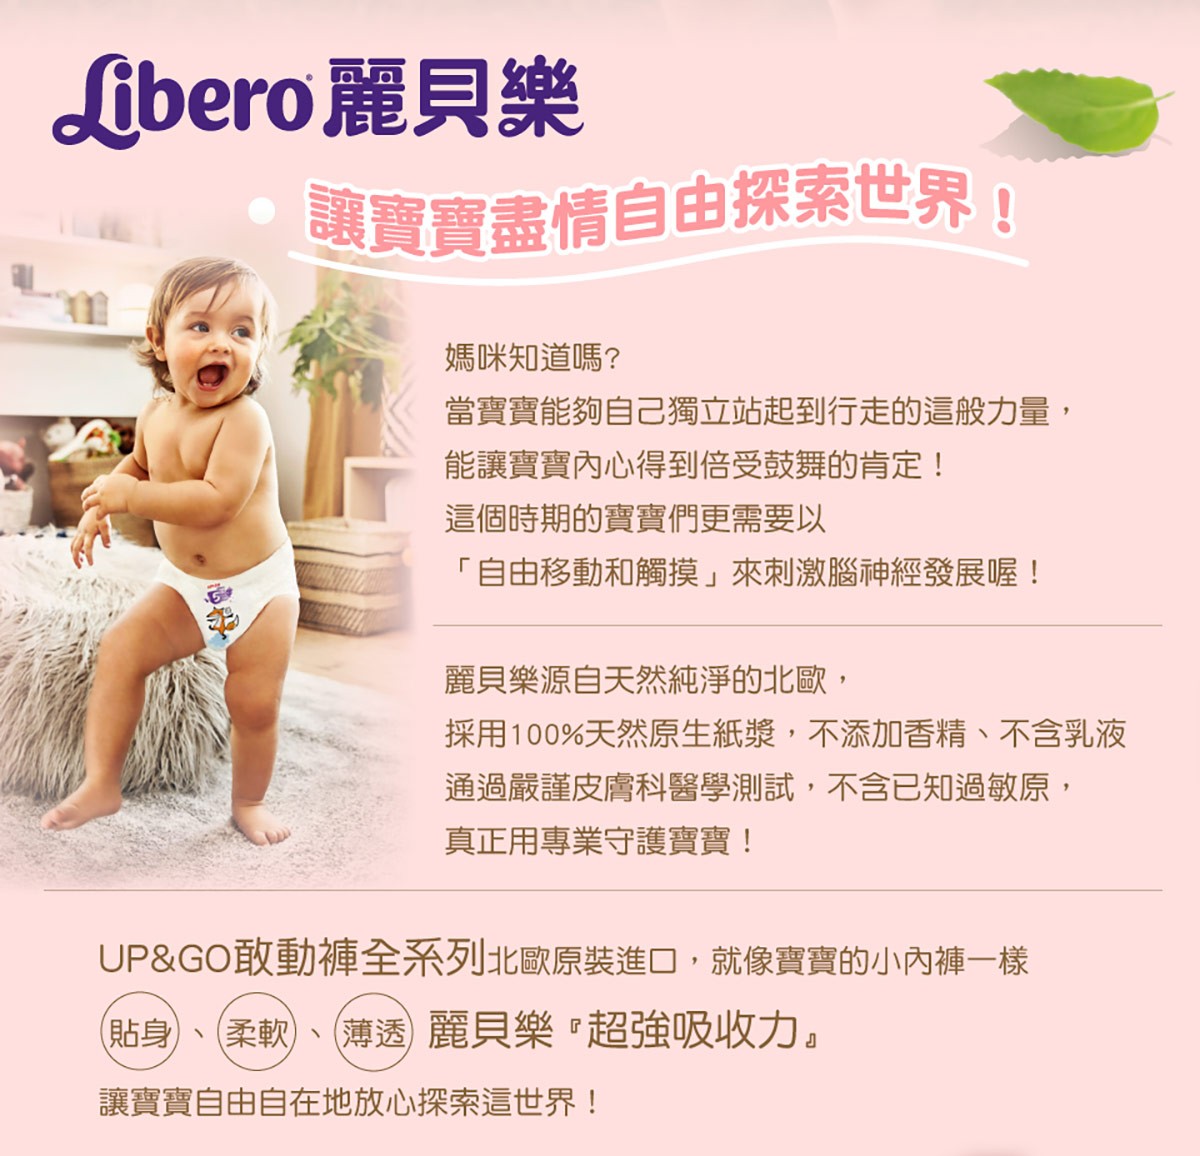 Libero 麗貝樂 讓寶寶盡情自由探索世界，北歐原裝進口，就像寶寶的小內褲一樣，貼身、柔軟、薄透，超強吸收力。